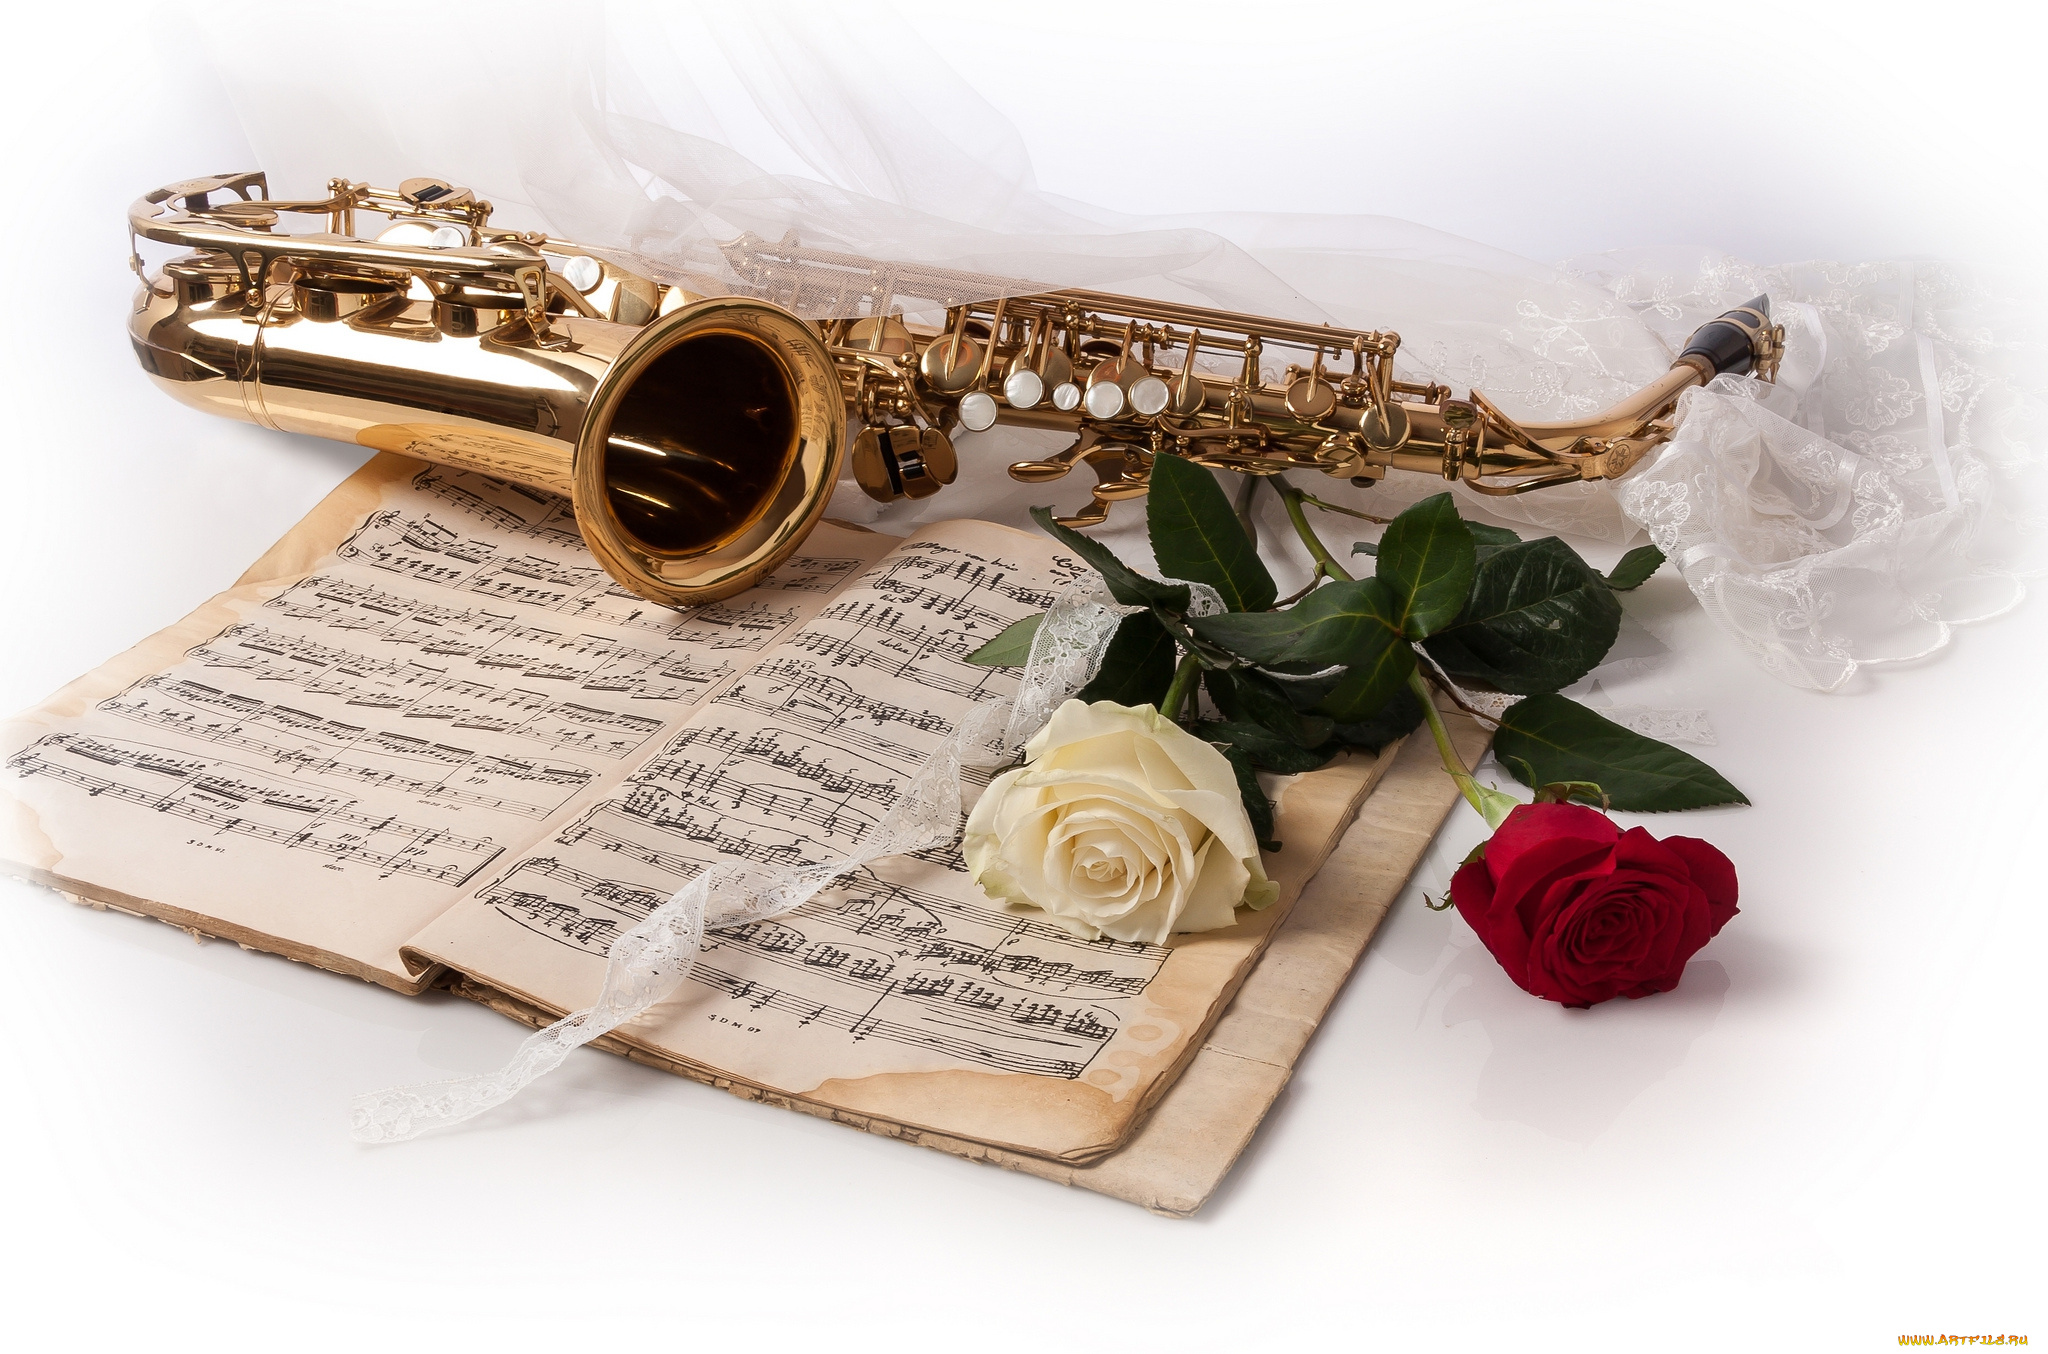 Песня другу на юбилей. Музыкальные инструменты и цветы. Открытка музыканту. С днём рождения саксофонисту открытки. Цветы для музыканта.